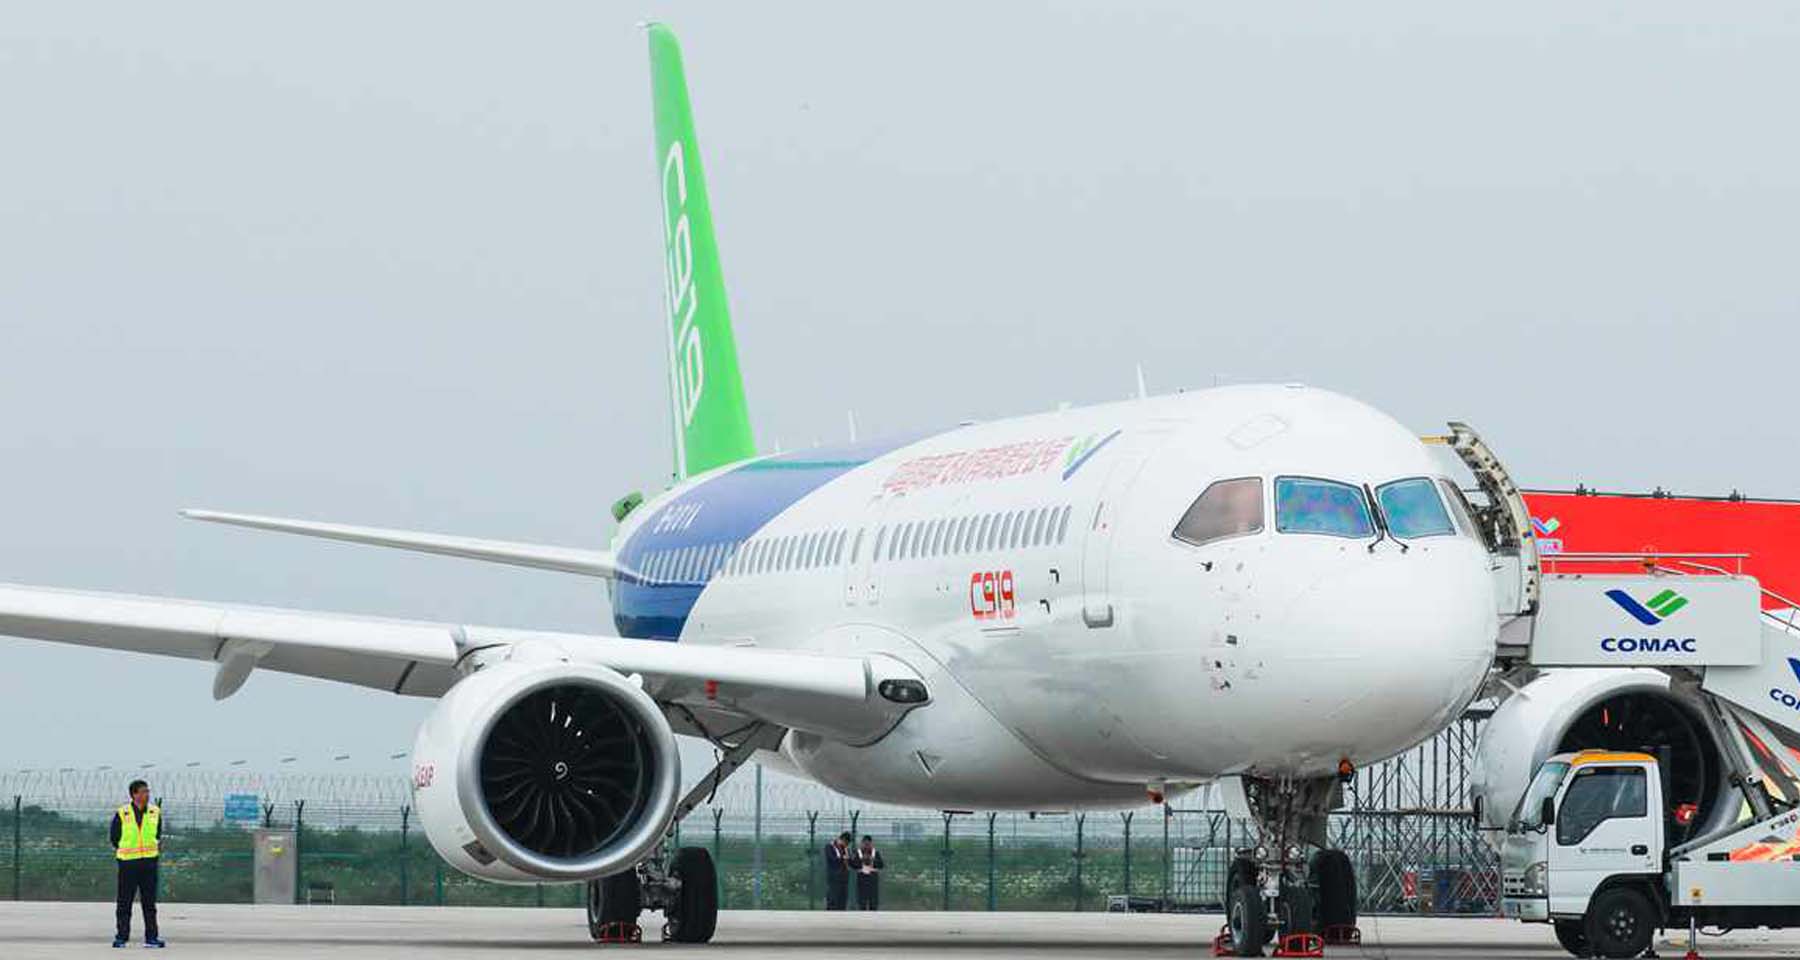 Çin'in Airbus ve Boeing'e rakip yolcu uçağı hakkında tüm detaylar